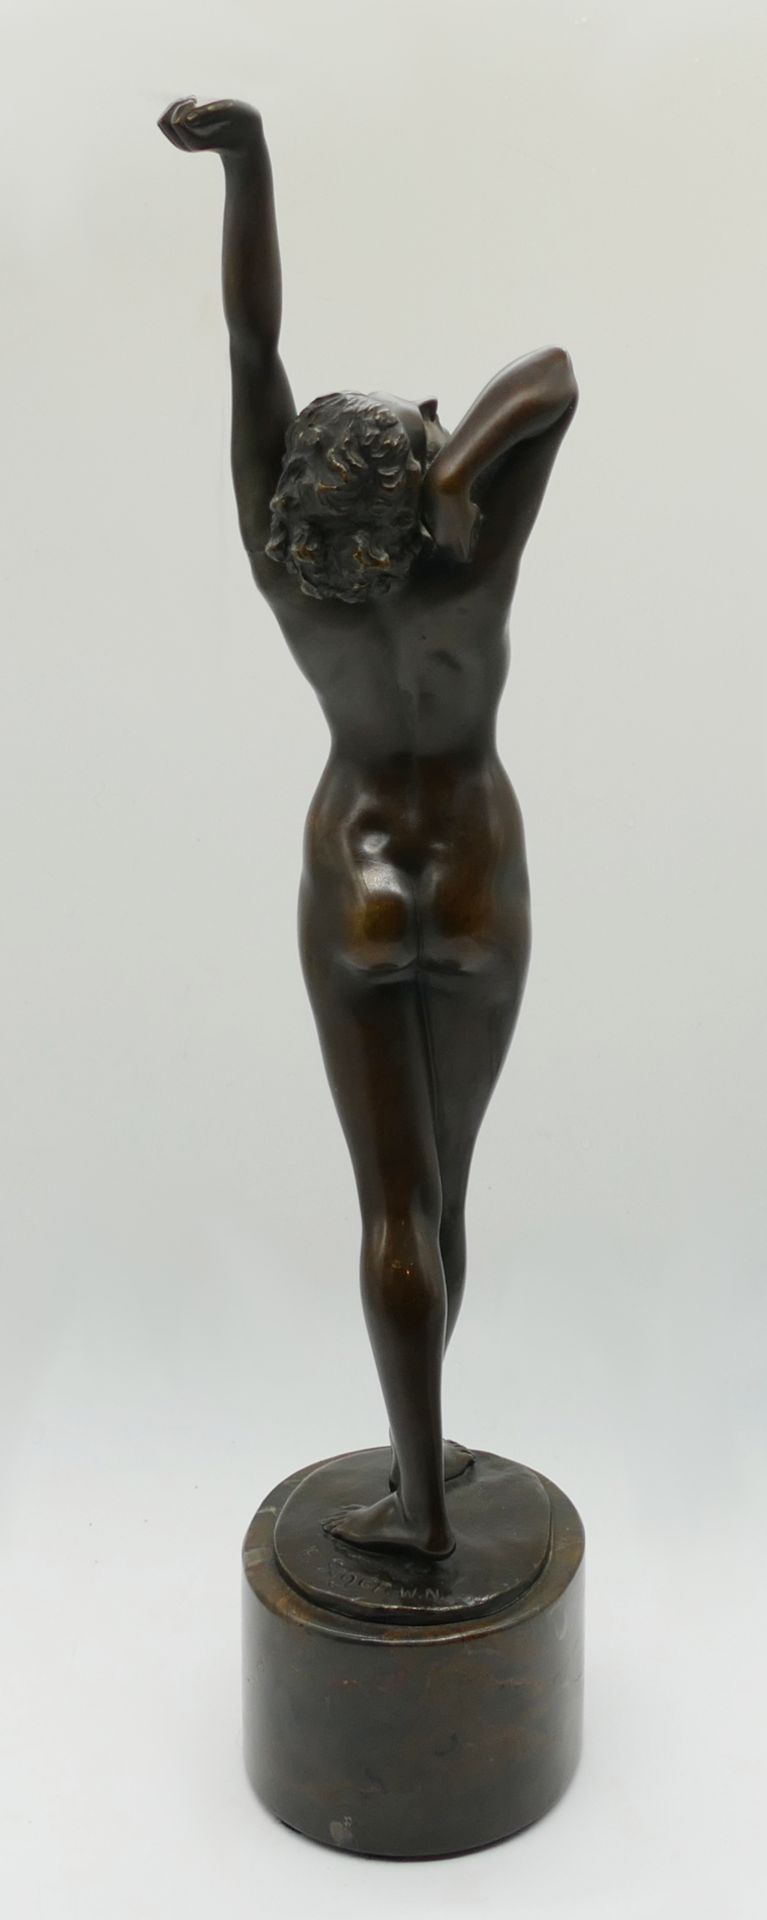 1 Bronzefigur auf Sockel bez. E. SEGER (wohl Ernst S. 1868 Neurode-1939 Berlin) "Erwachende" H mit S - Bild 3 aus 6